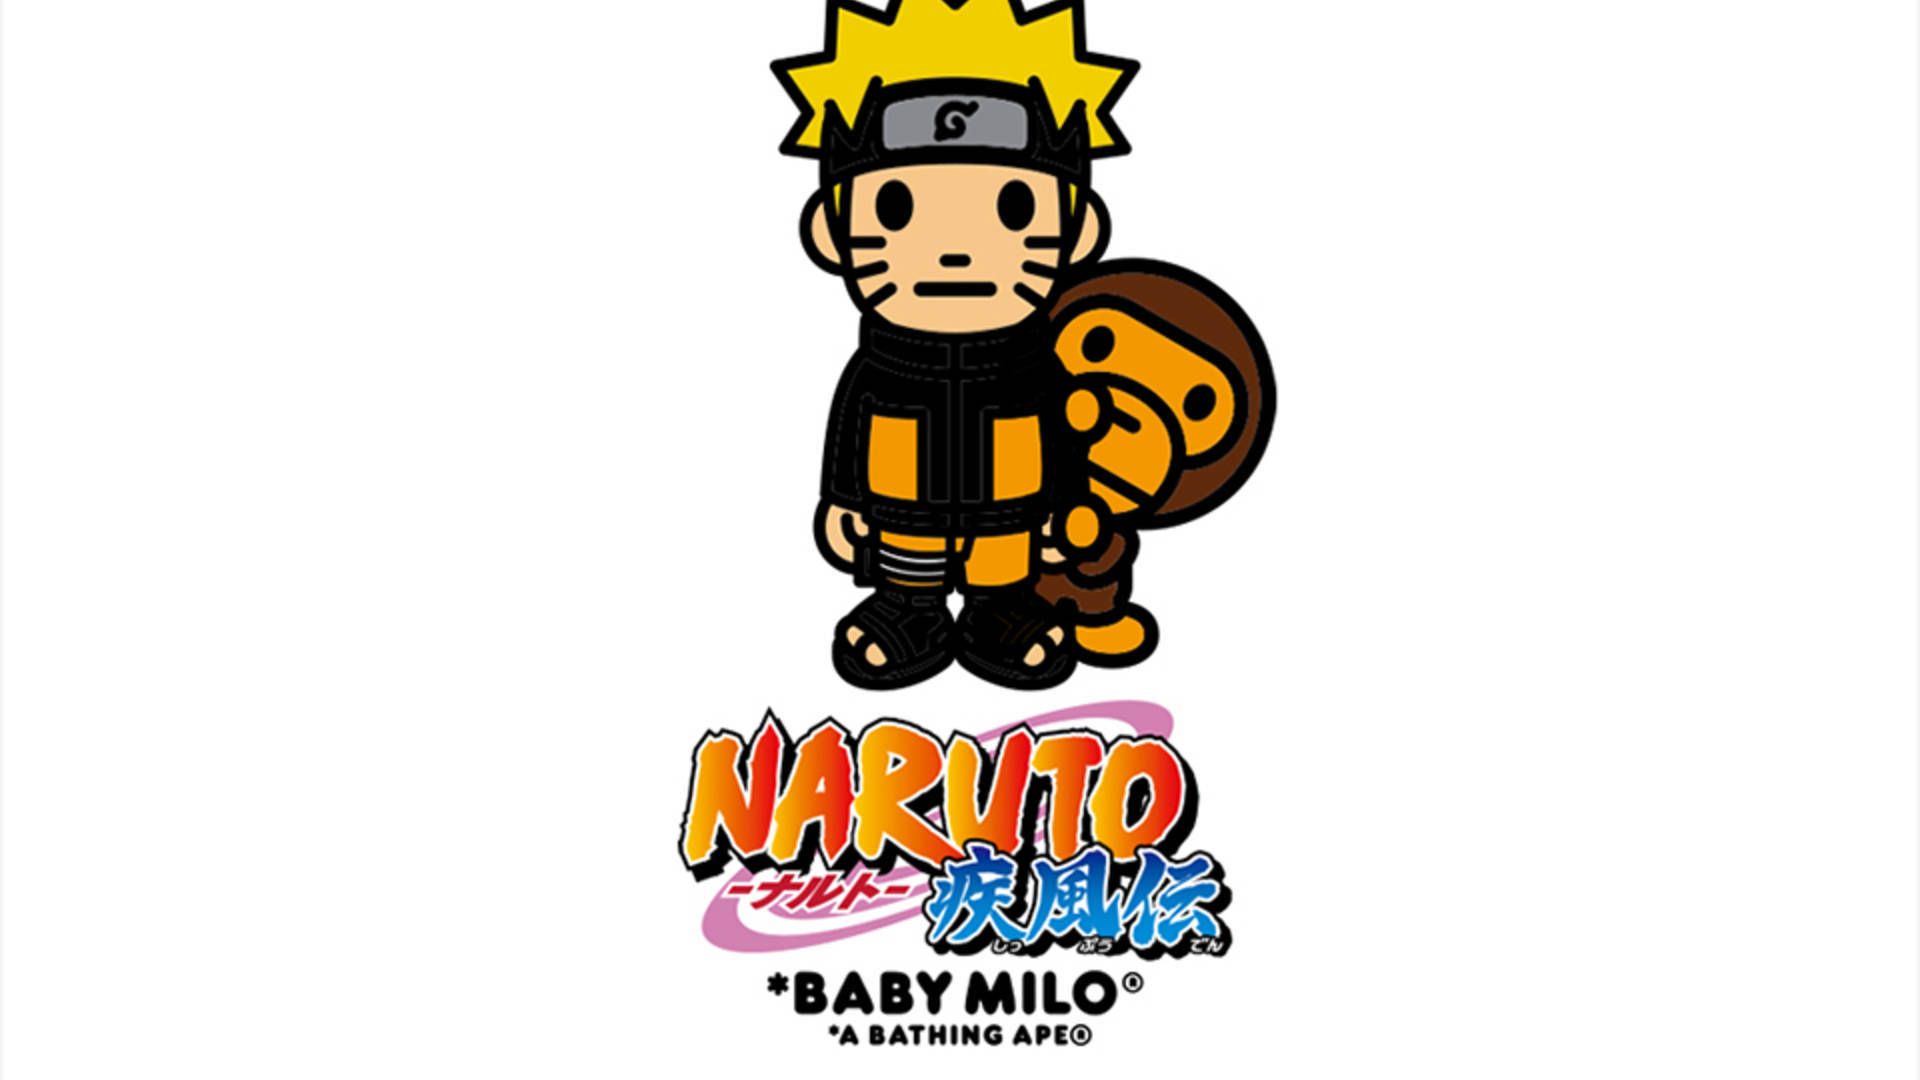 BAPE Shares Collaboration with Naruto & Boruto